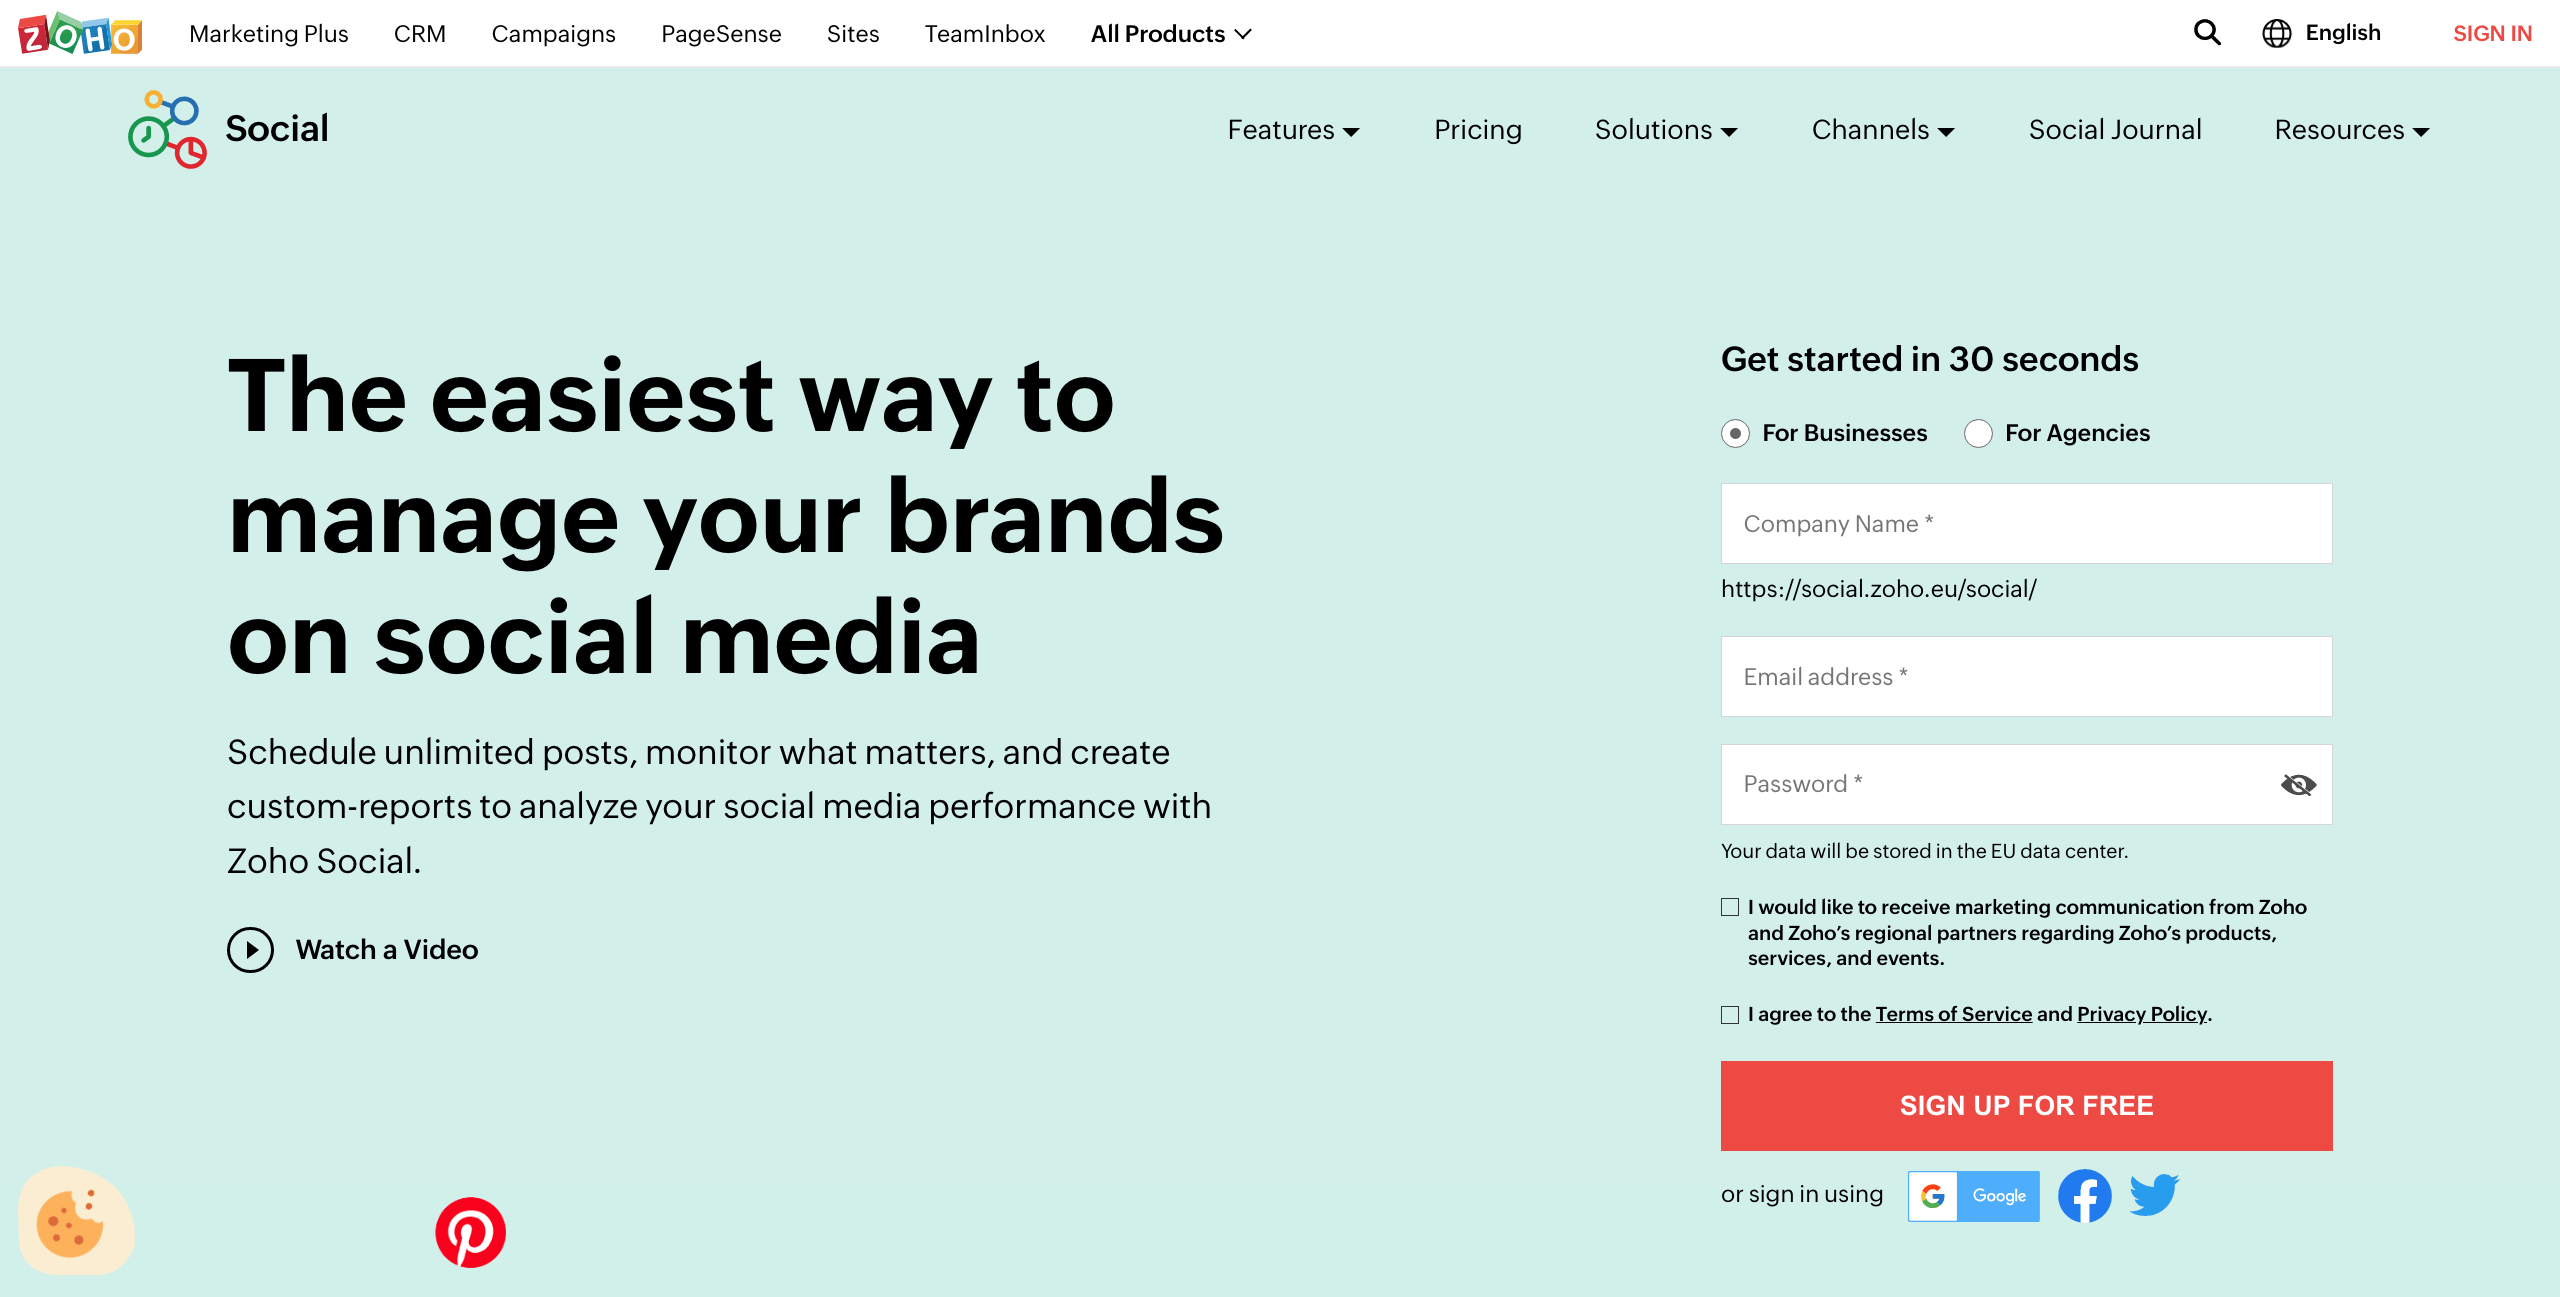 Page d’accueil de Zoho Social, outil de gestion des marques sur les réseaux sociaux destiné aux agences et aux entreprises de petite taille